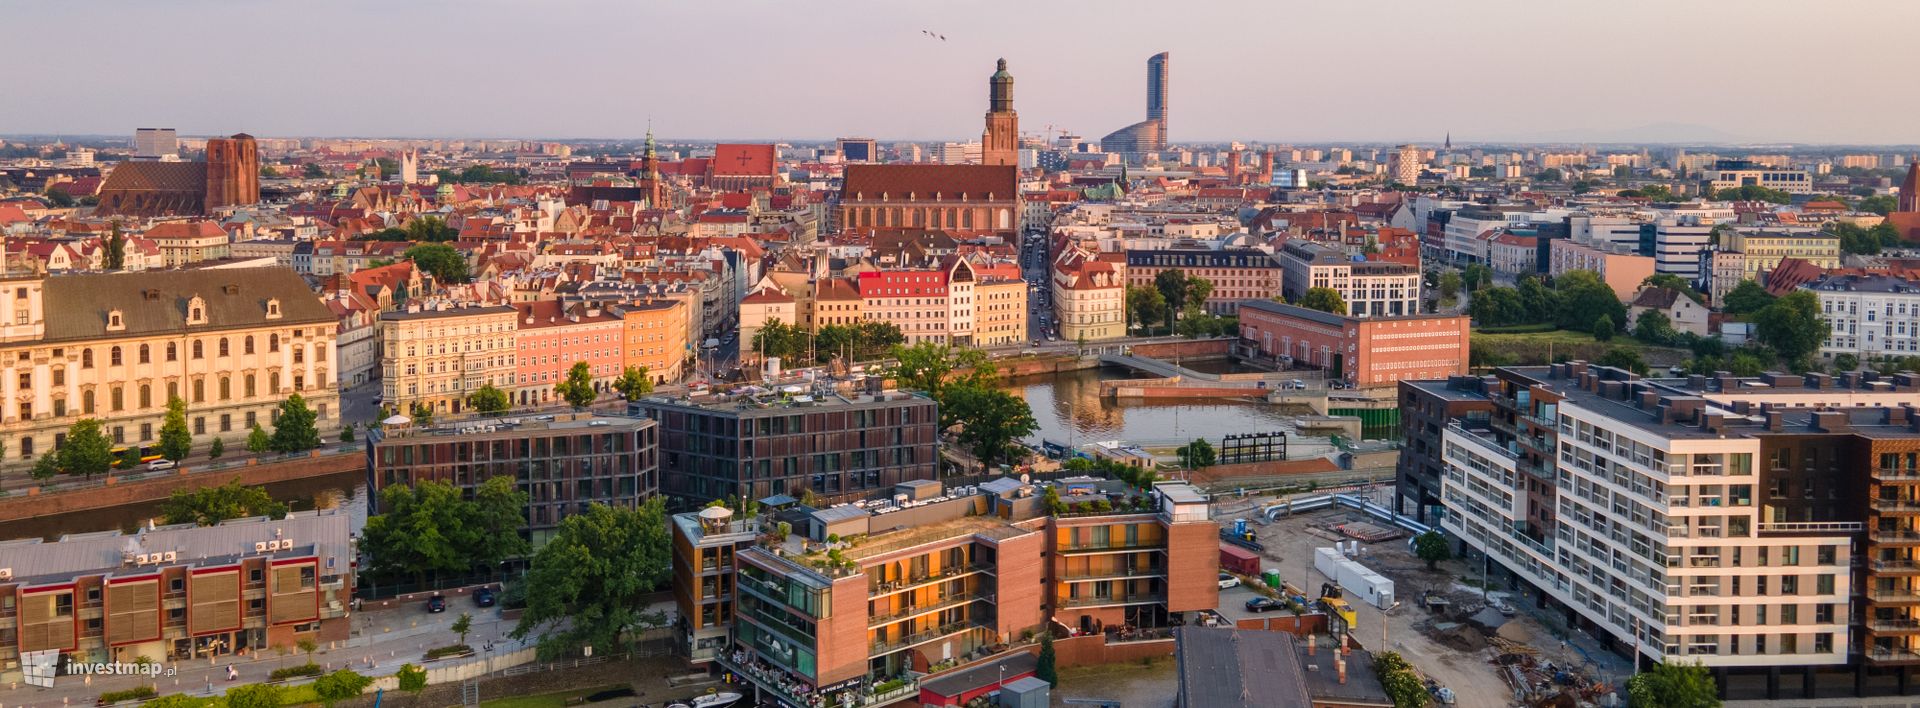 Wrocław doceniony w międzynarodowym rankingu. W przyszłości może być jednym z liderów technologii i innowacji